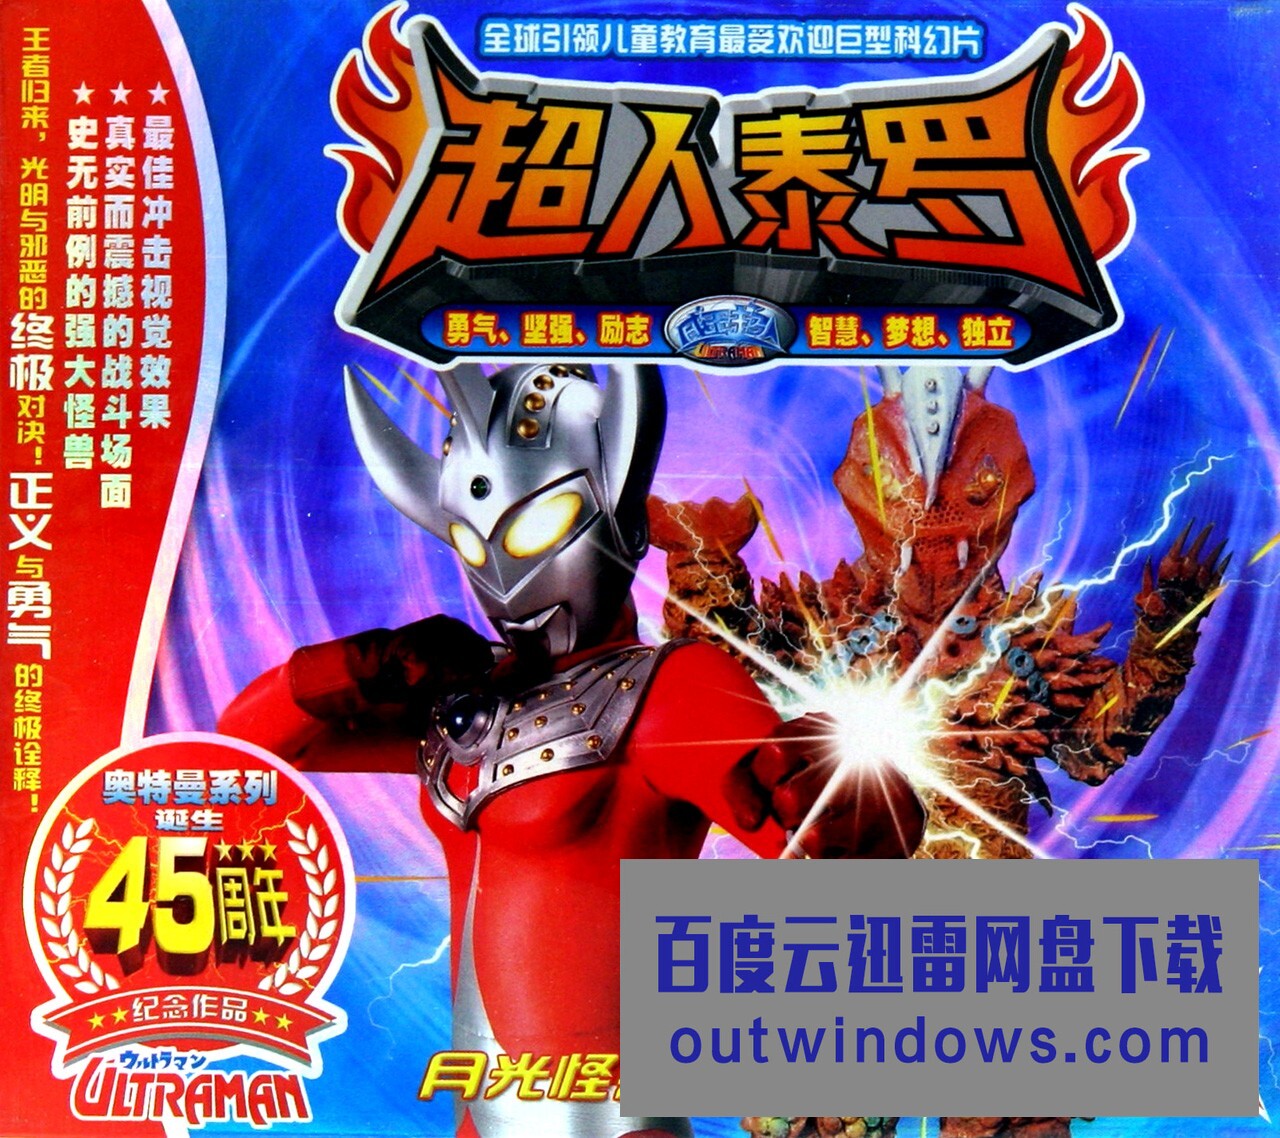 [电视剧]日本科幻特摄剧《Ultraman Taro 泰罗·奥特曼》中文版全53集下载 mp4/1080p/国语中字1080p|4k高清